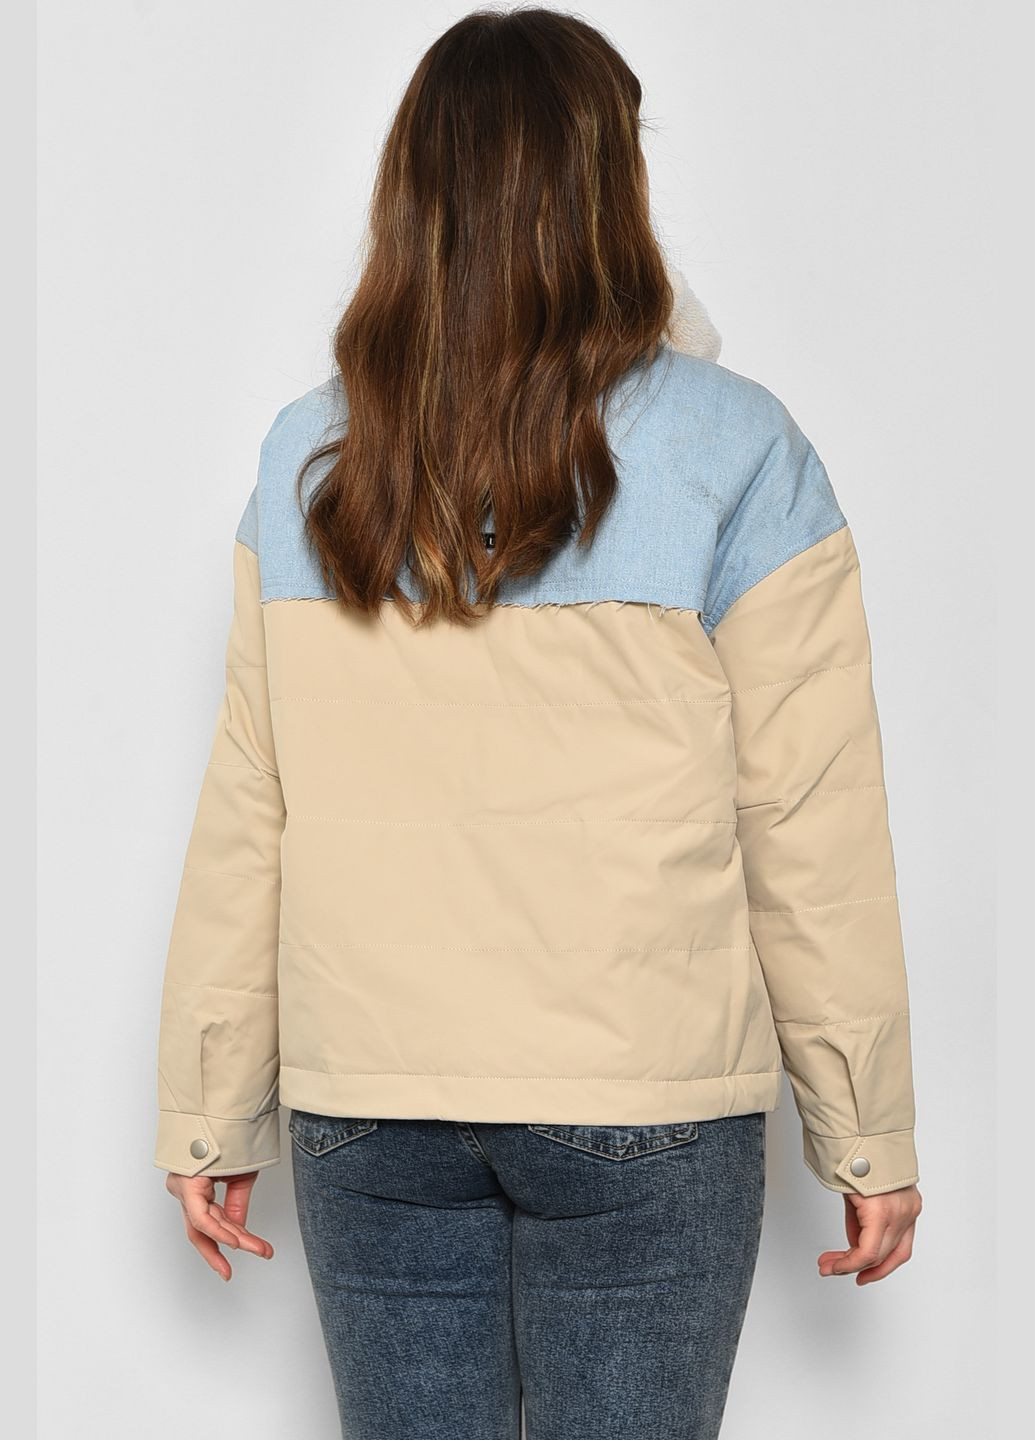 Бежевая демисезонная куртка женская демисезонная бежево-голубого цвета Let's Shop